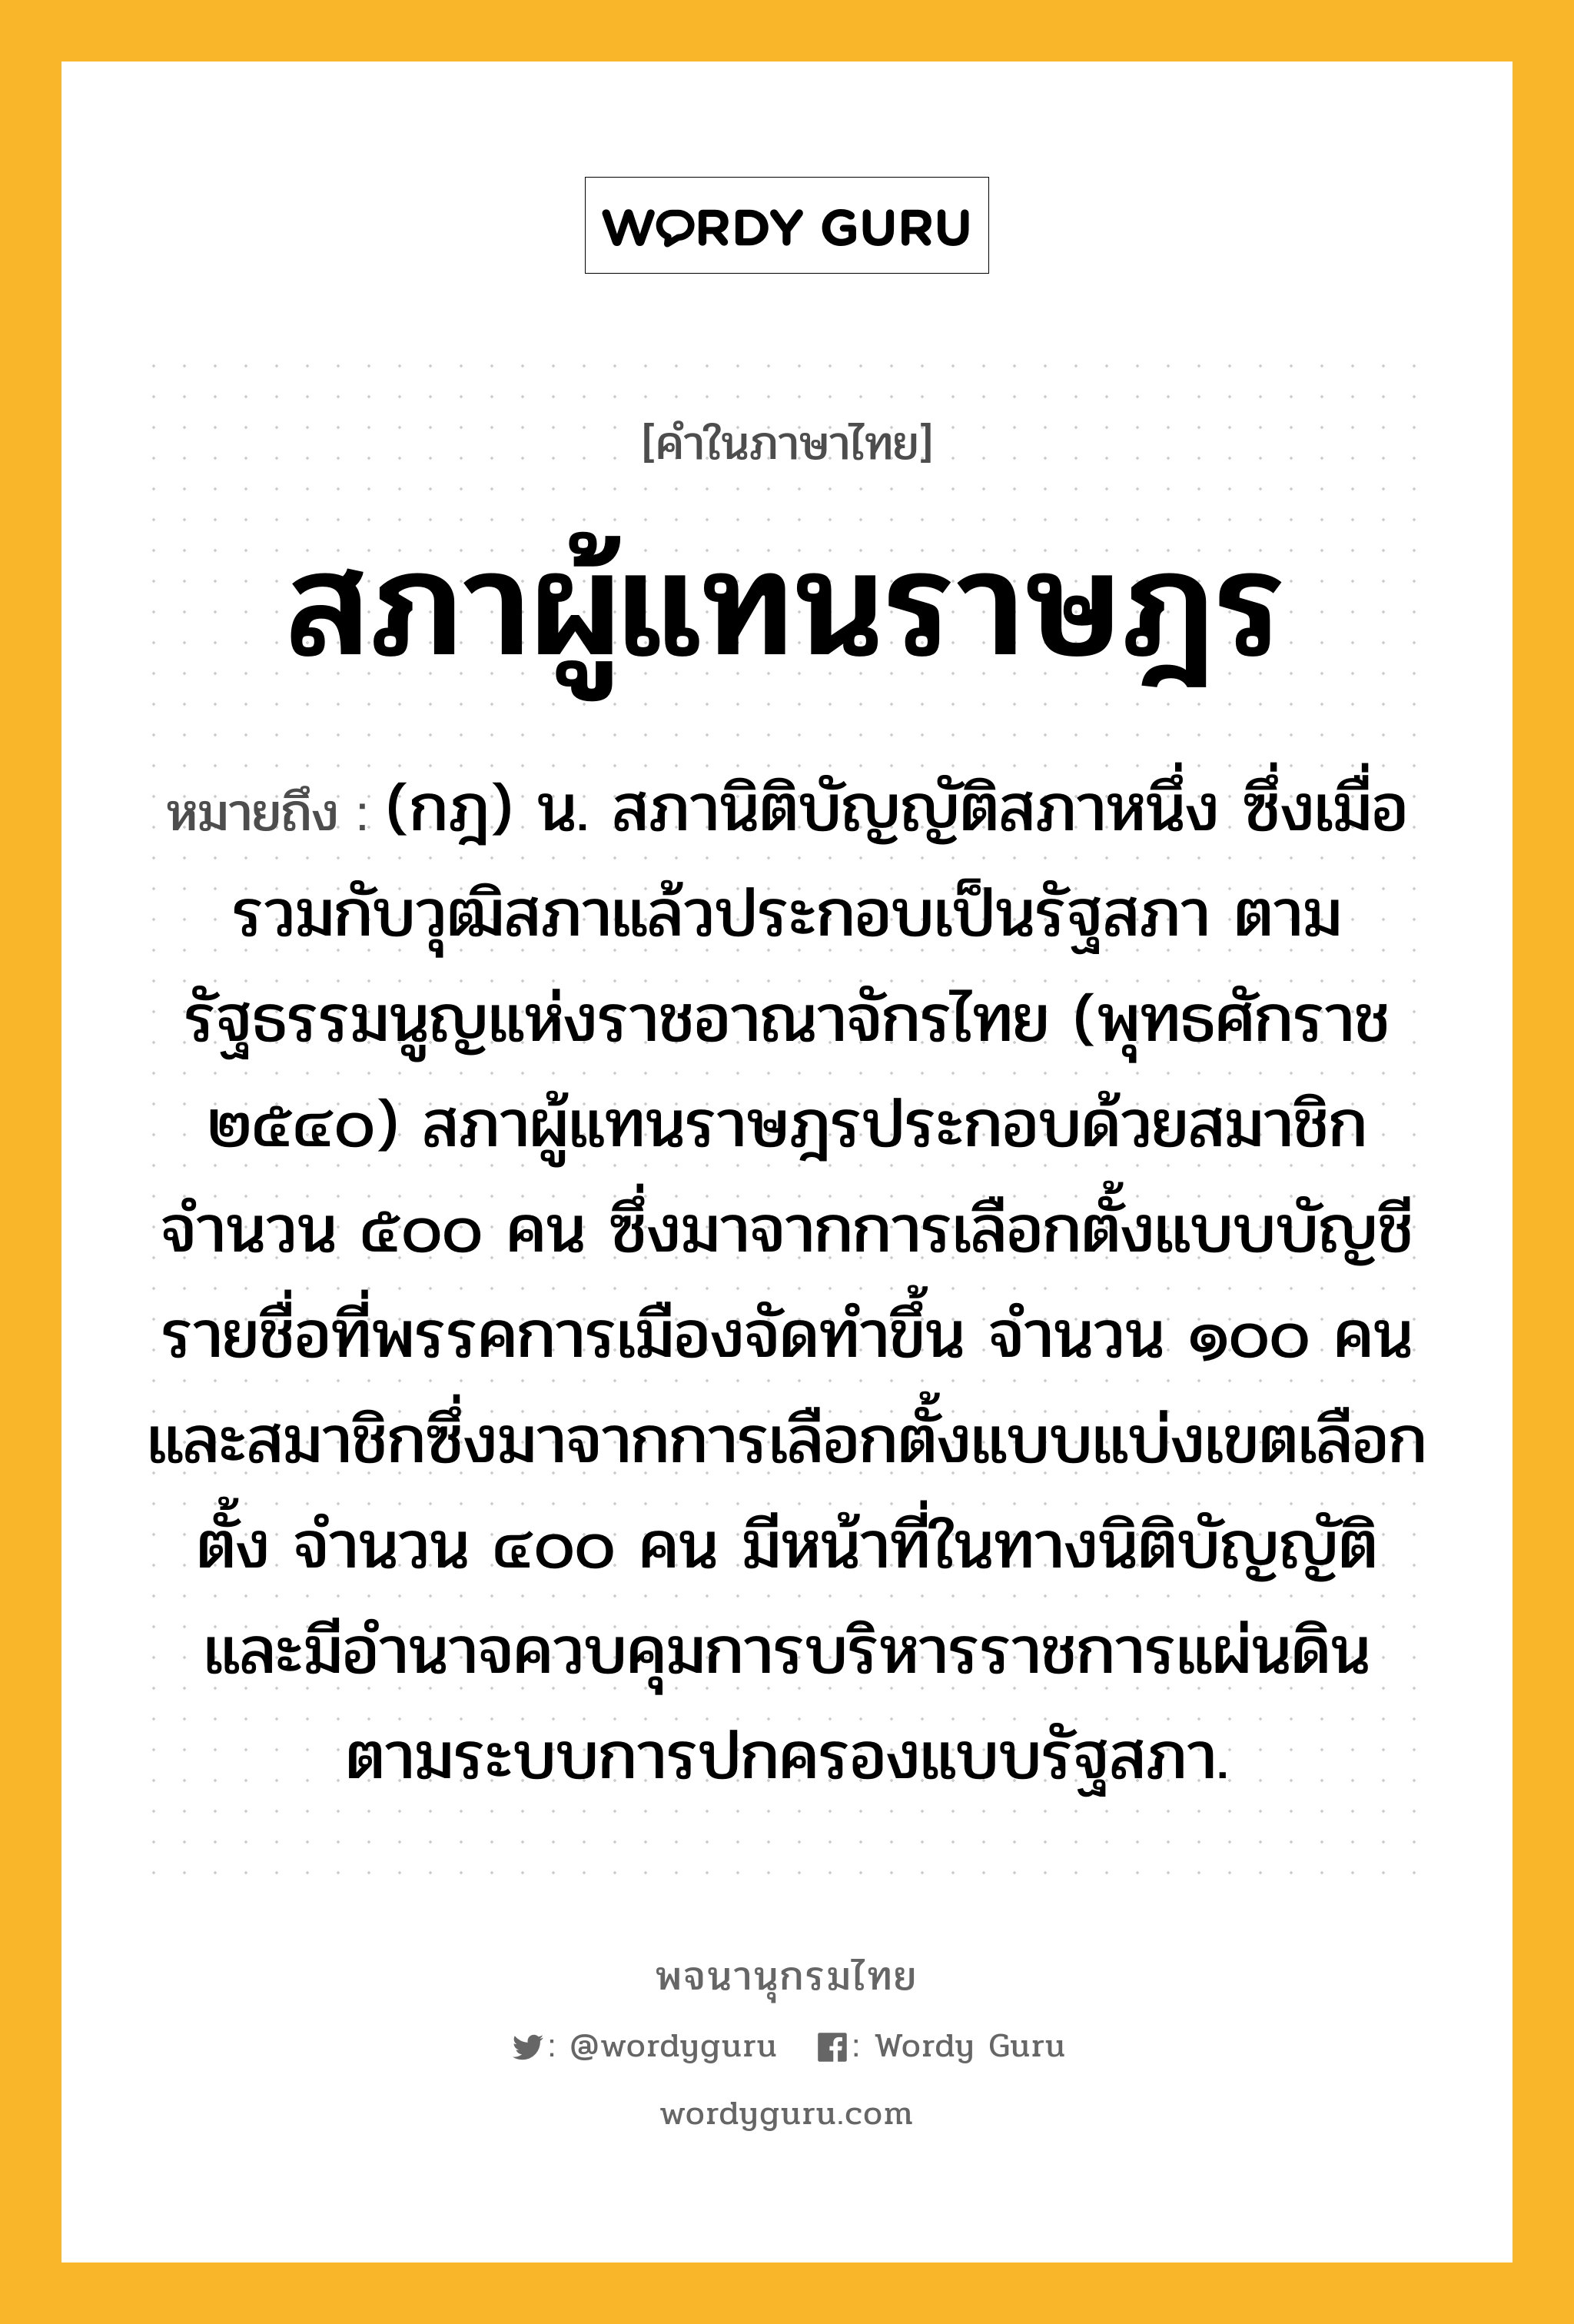 สภาผู้แทนราษฎร หมายถึงอะไร?, คำในภาษาไทย สภาผู้แทนราษฎร หมายถึง (กฎ) น. สภานิติบัญญัติสภาหนึ่ง ซึ่งเมื่อรวมกับวุฒิสภาแล้วประกอบเป็นรัฐสภา ตามรัฐธรรมนูญแห่งราชอาณาจักรไทย (พุทธศักราช ๒๕๔๐) สภาผู้แทนราษฎรประกอบด้วยสมาชิกจำนวน ๕๐๐ คน ซึ่งมาจากการเลือกตั้งแบบบัญชีรายชื่อที่พรรคการเมืองจัดทำขึ้น จำนวน ๑๐๐ คน และสมาชิกซึ่งมาจากการเลือกตั้งแบบแบ่งเขตเลือกตั้ง จำนวน ๔๐๐ คน มีหน้าที่ในทางนิติบัญญัติ และมีอำนาจควบคุมการบริหารราชการแผ่นดิน ตามระบบการปกครองแบบรัฐสภา.